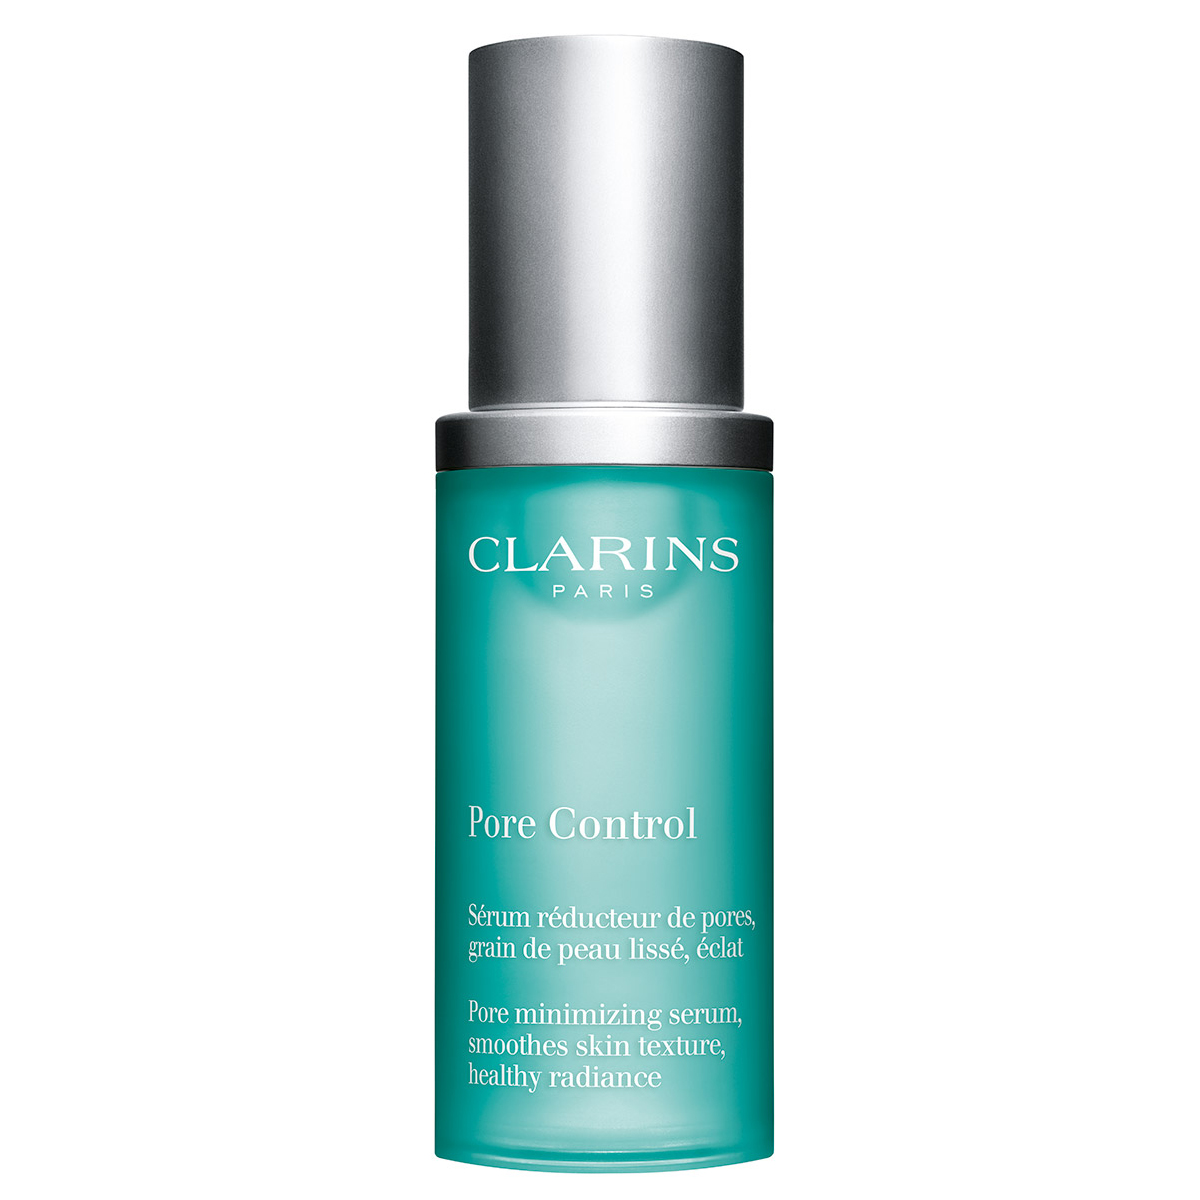 Clarins Pore Control Pore Minimizing Gözenek Sıkılaştırıcı Serum 30 ml Tüm Ciltler İçin